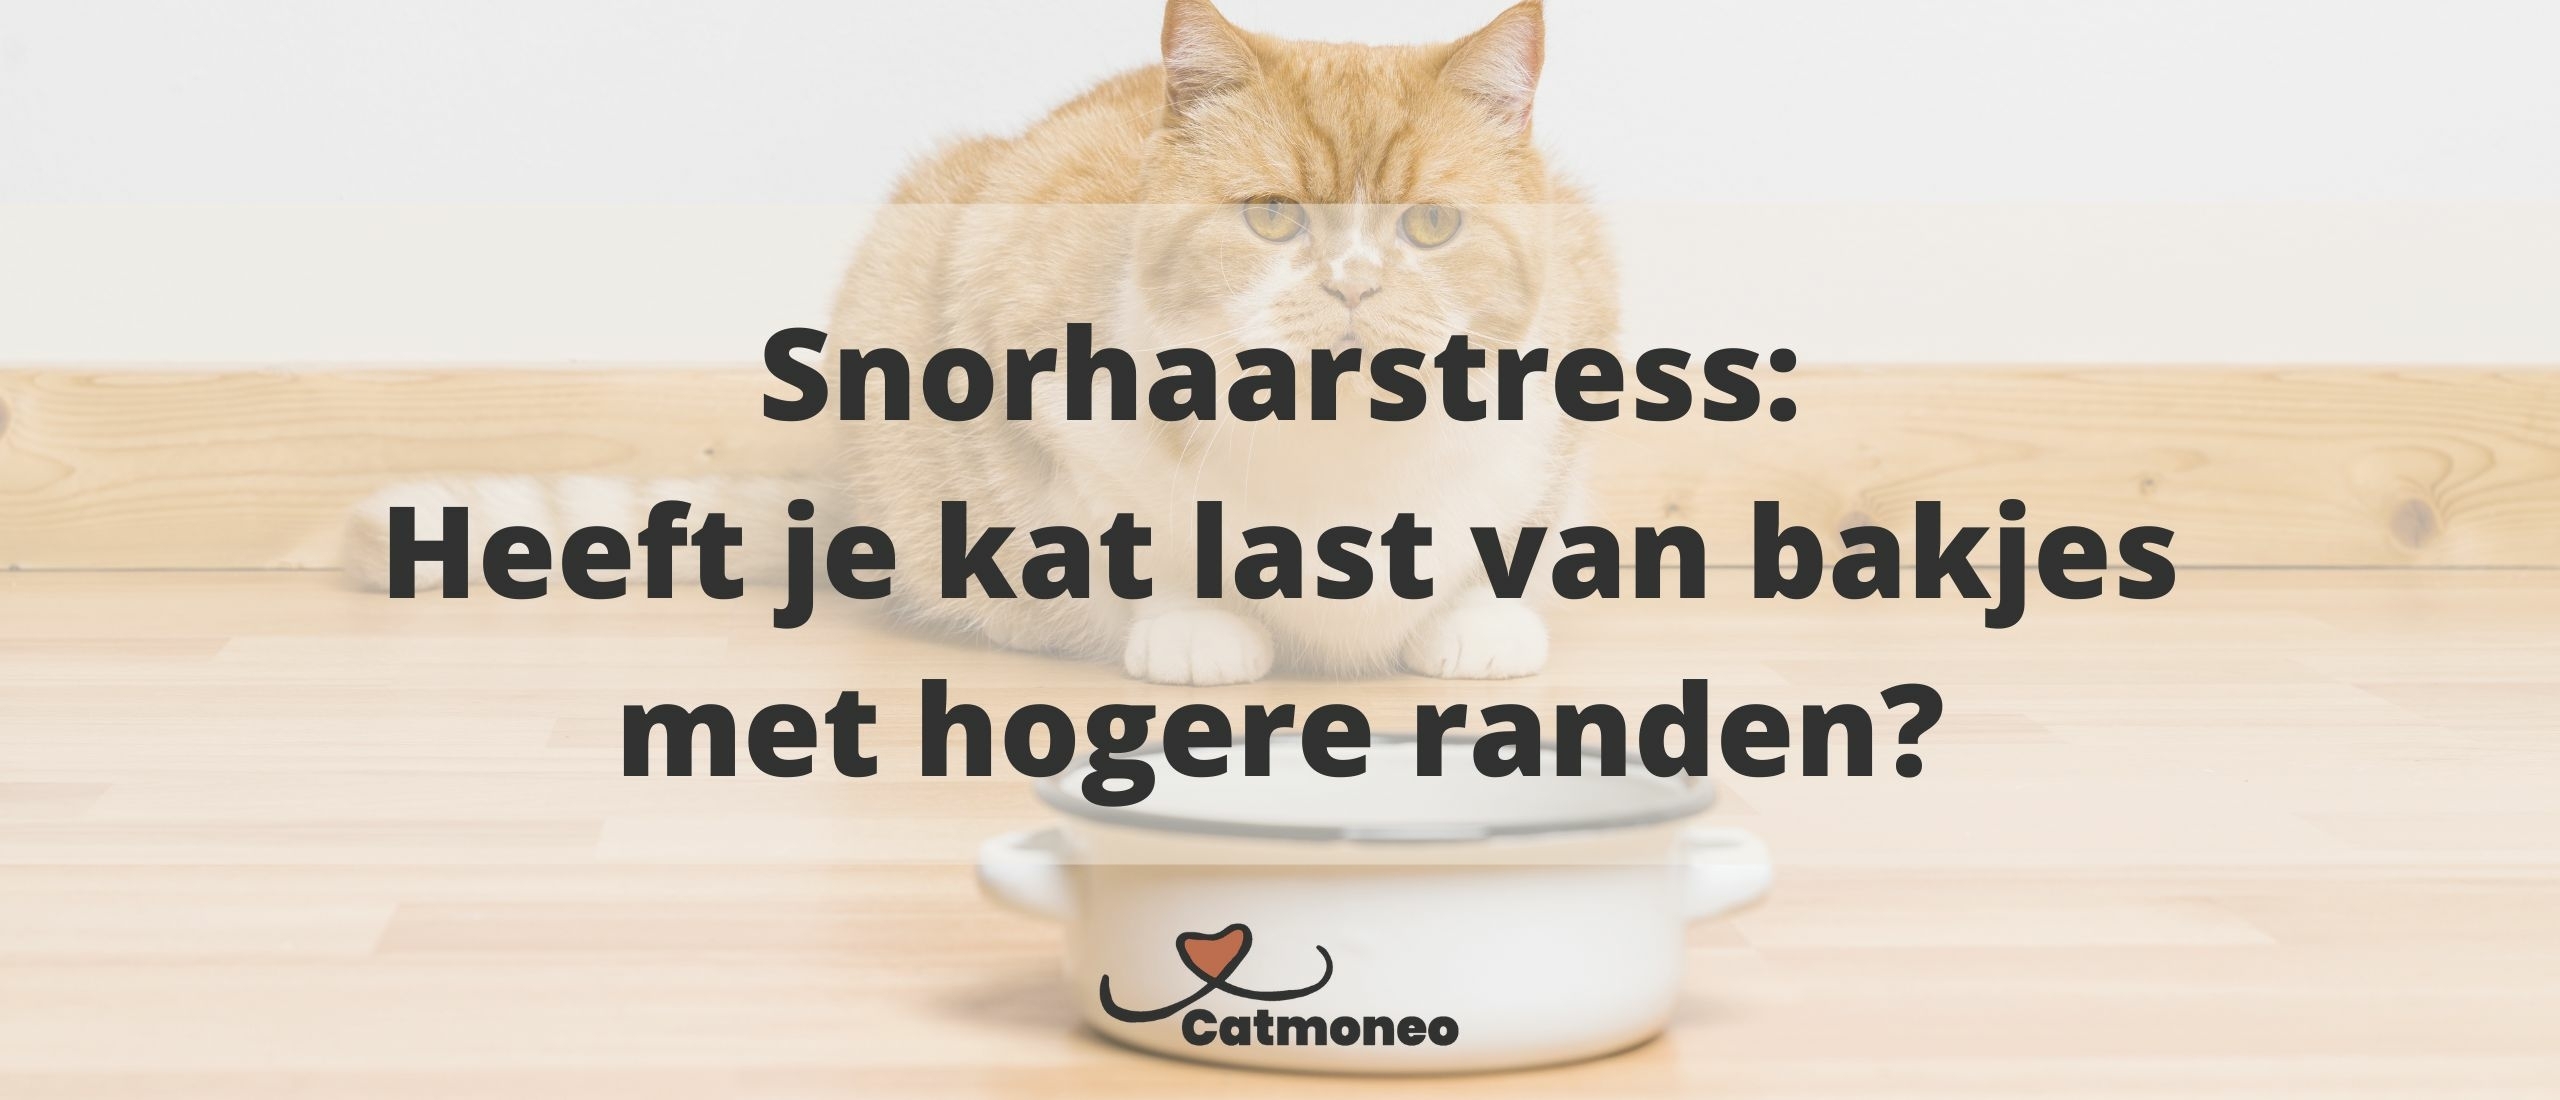 Snorhaarstress: Is een laag voerbakje beter voor je kat?